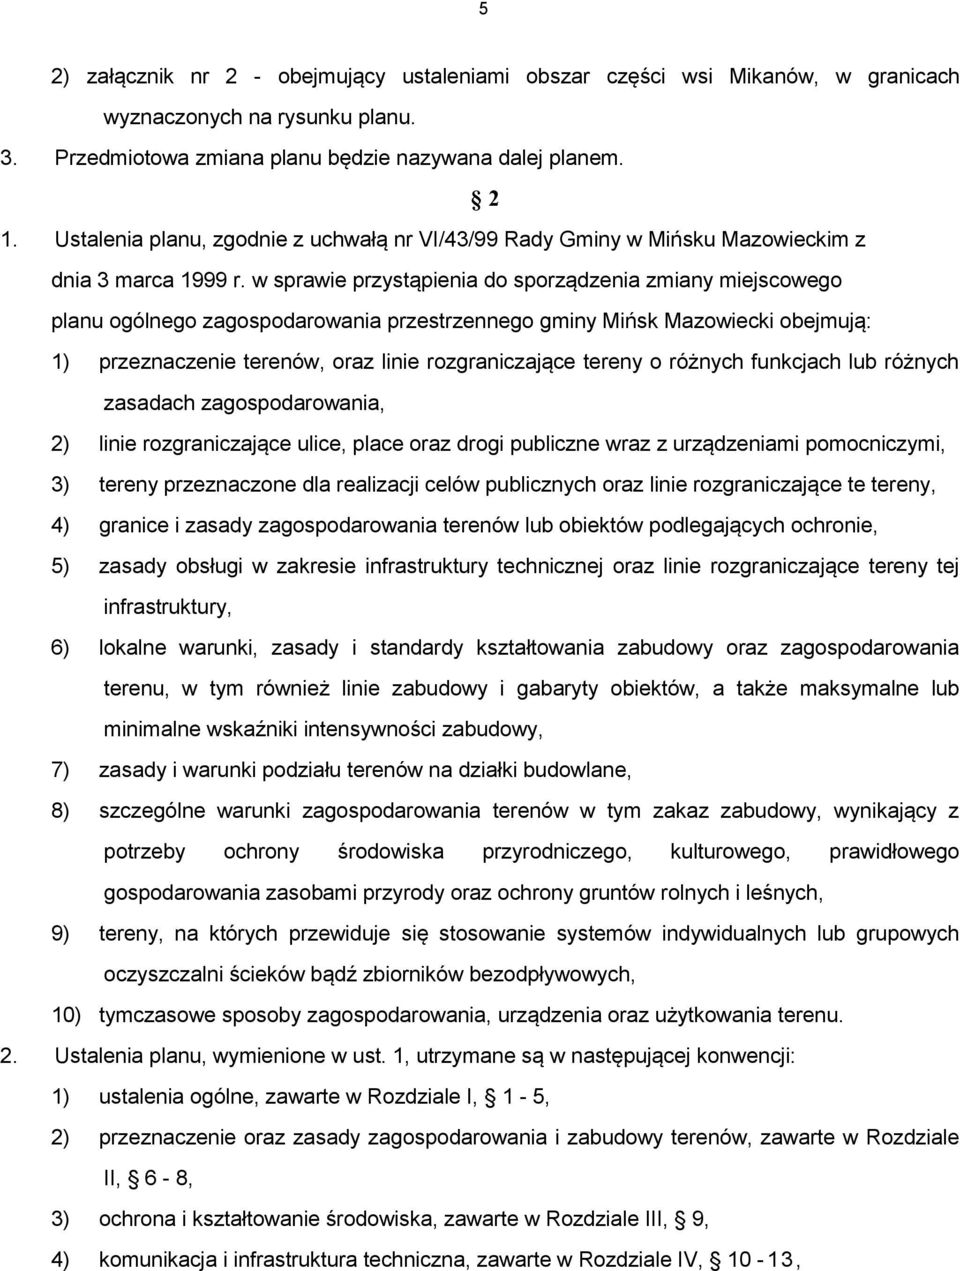 w sprawie przystąpienia do sporządzenia zmiany miejscowego planu ogólnego zagospodarowania przestrzennego gminy Mińsk Mazowiecki obejmują: 1) przeznaczenie terenów, oraz linie rozgraniczające tereny